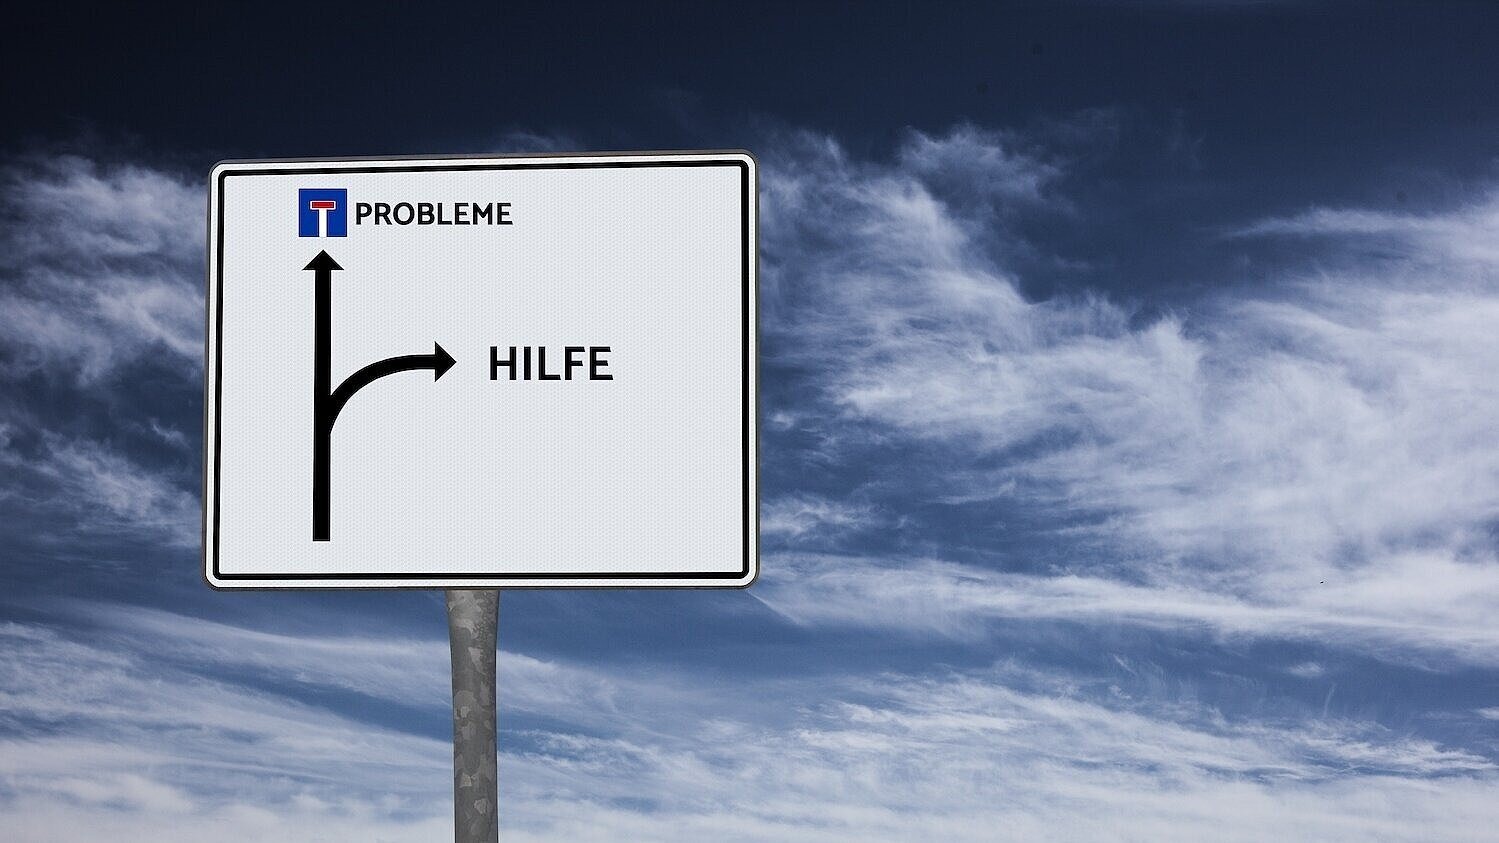 Straßenschild mit Richtungspfeilen zu den Wörtern "Probleme" und "Hilfe"